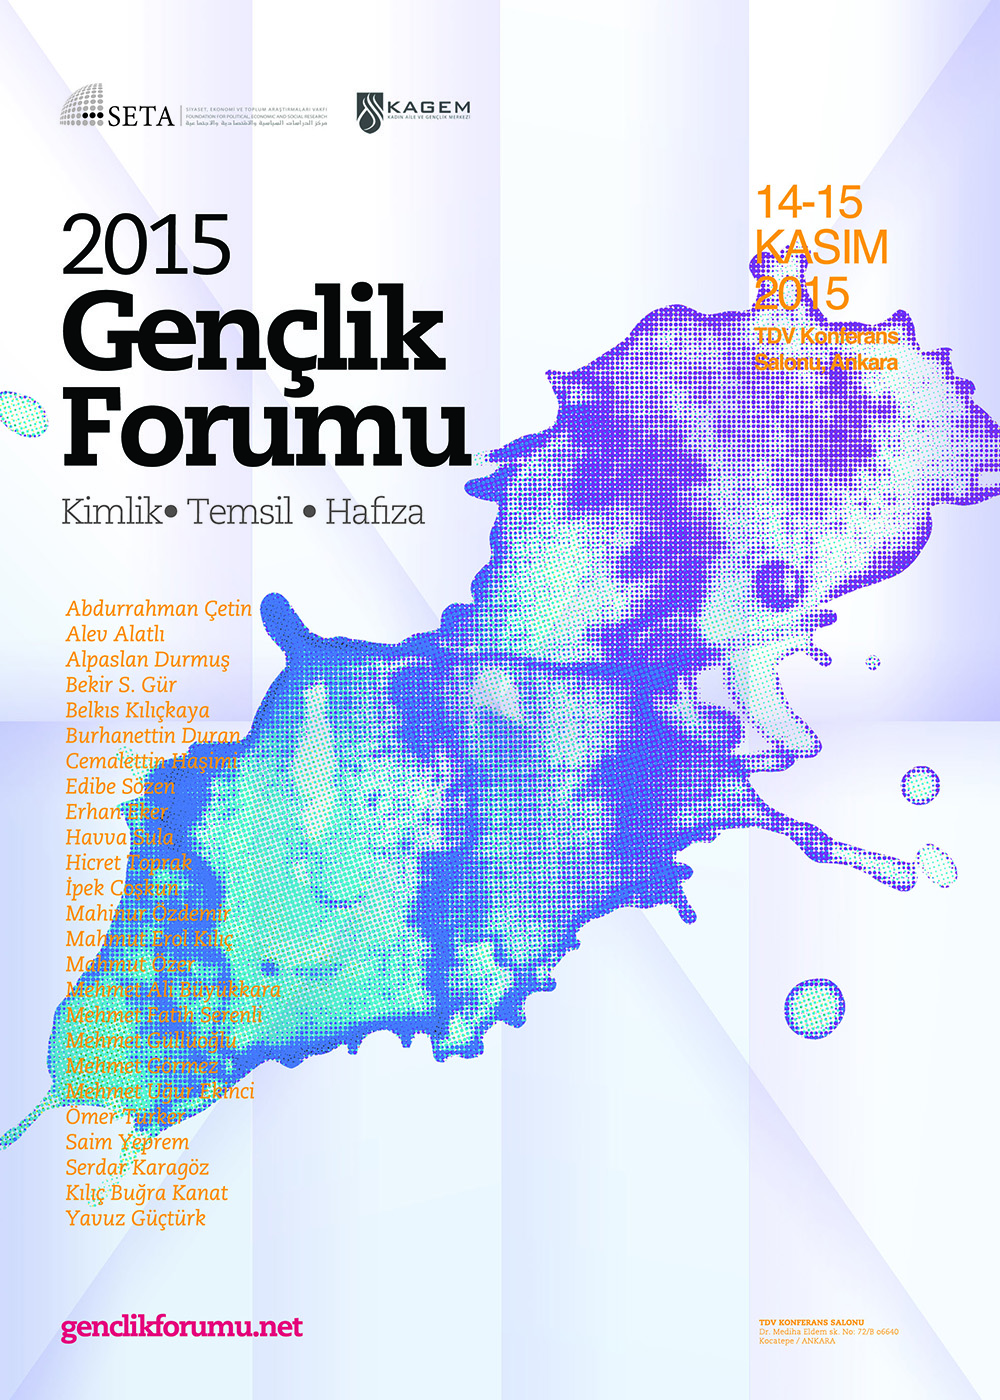 Gençlik Forumu 2015